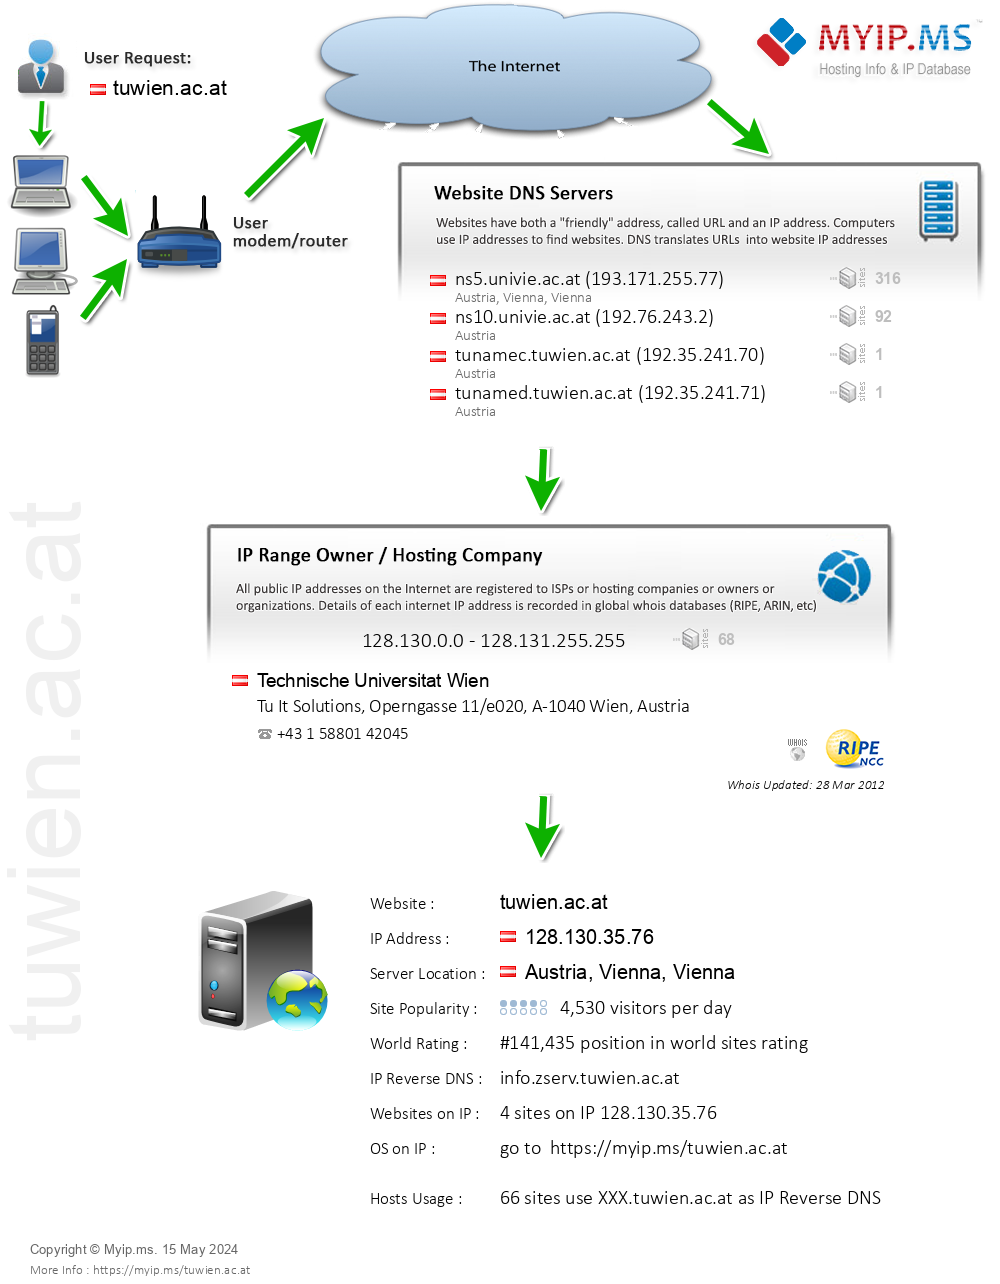 Tuwien.ac.at - Website Hosting Visual IP Diagram